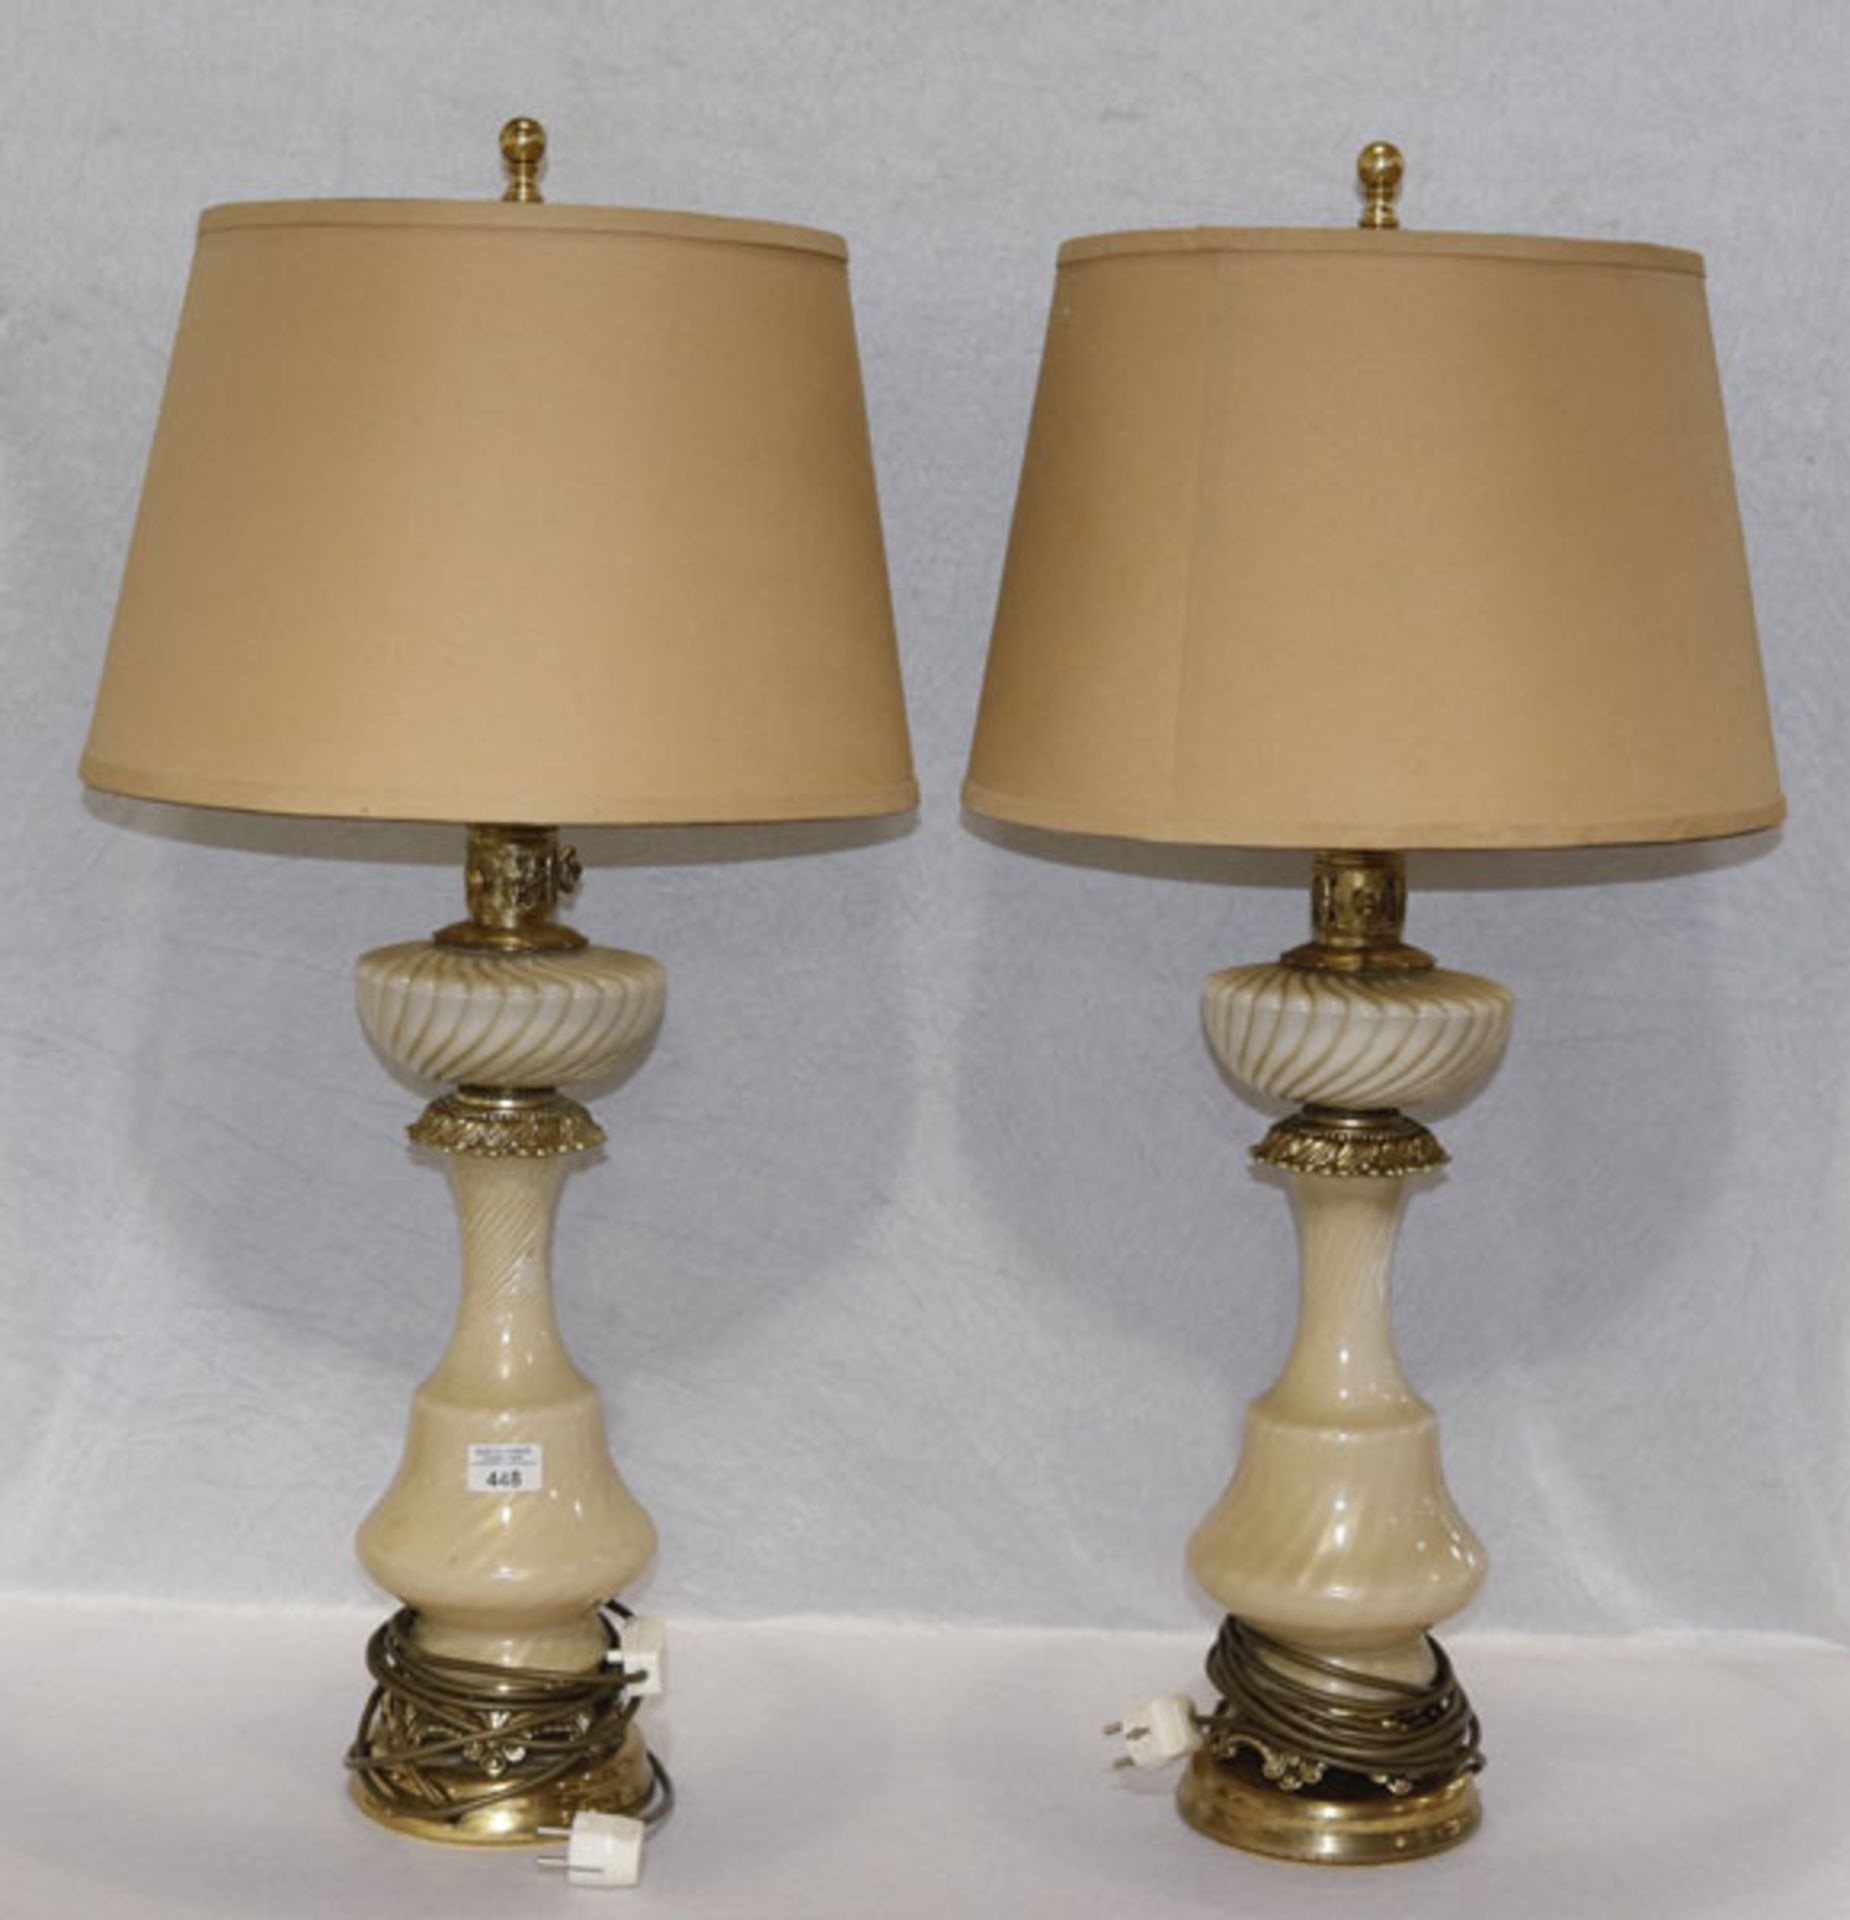 Paar Tischlampen, Glas/Metall Lampenfuß mit beigen Schirm, H 85 cm, Gebrauchsspuren